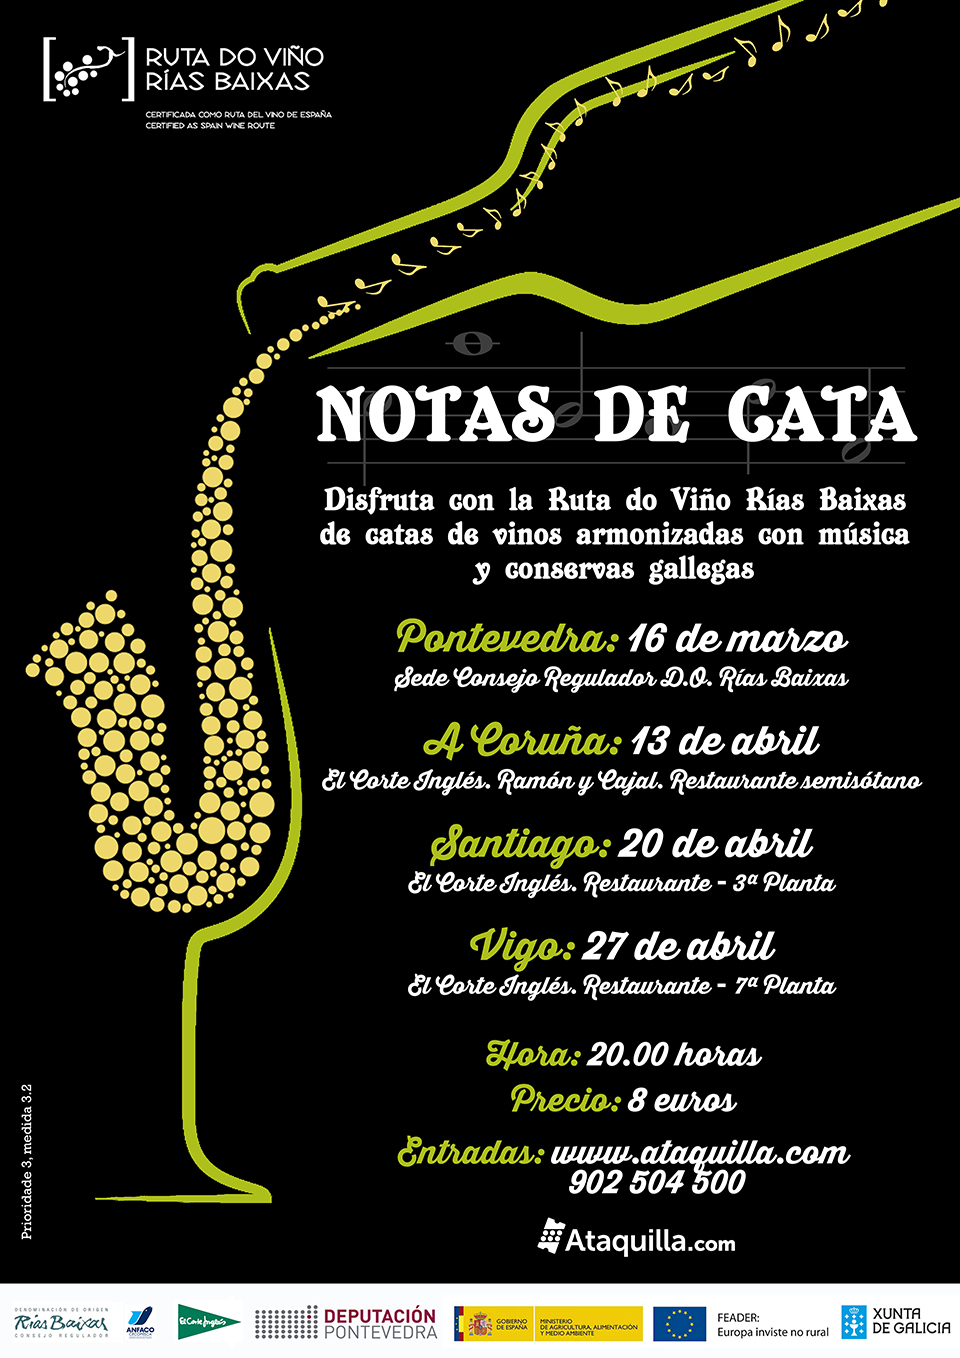 Las ‘Notas de Cata’ de la Ruta do Viño Rías Baixas recalan el próximo 13 de abril en El Corte Inglés de Ramón y Cajal (A Coruña)